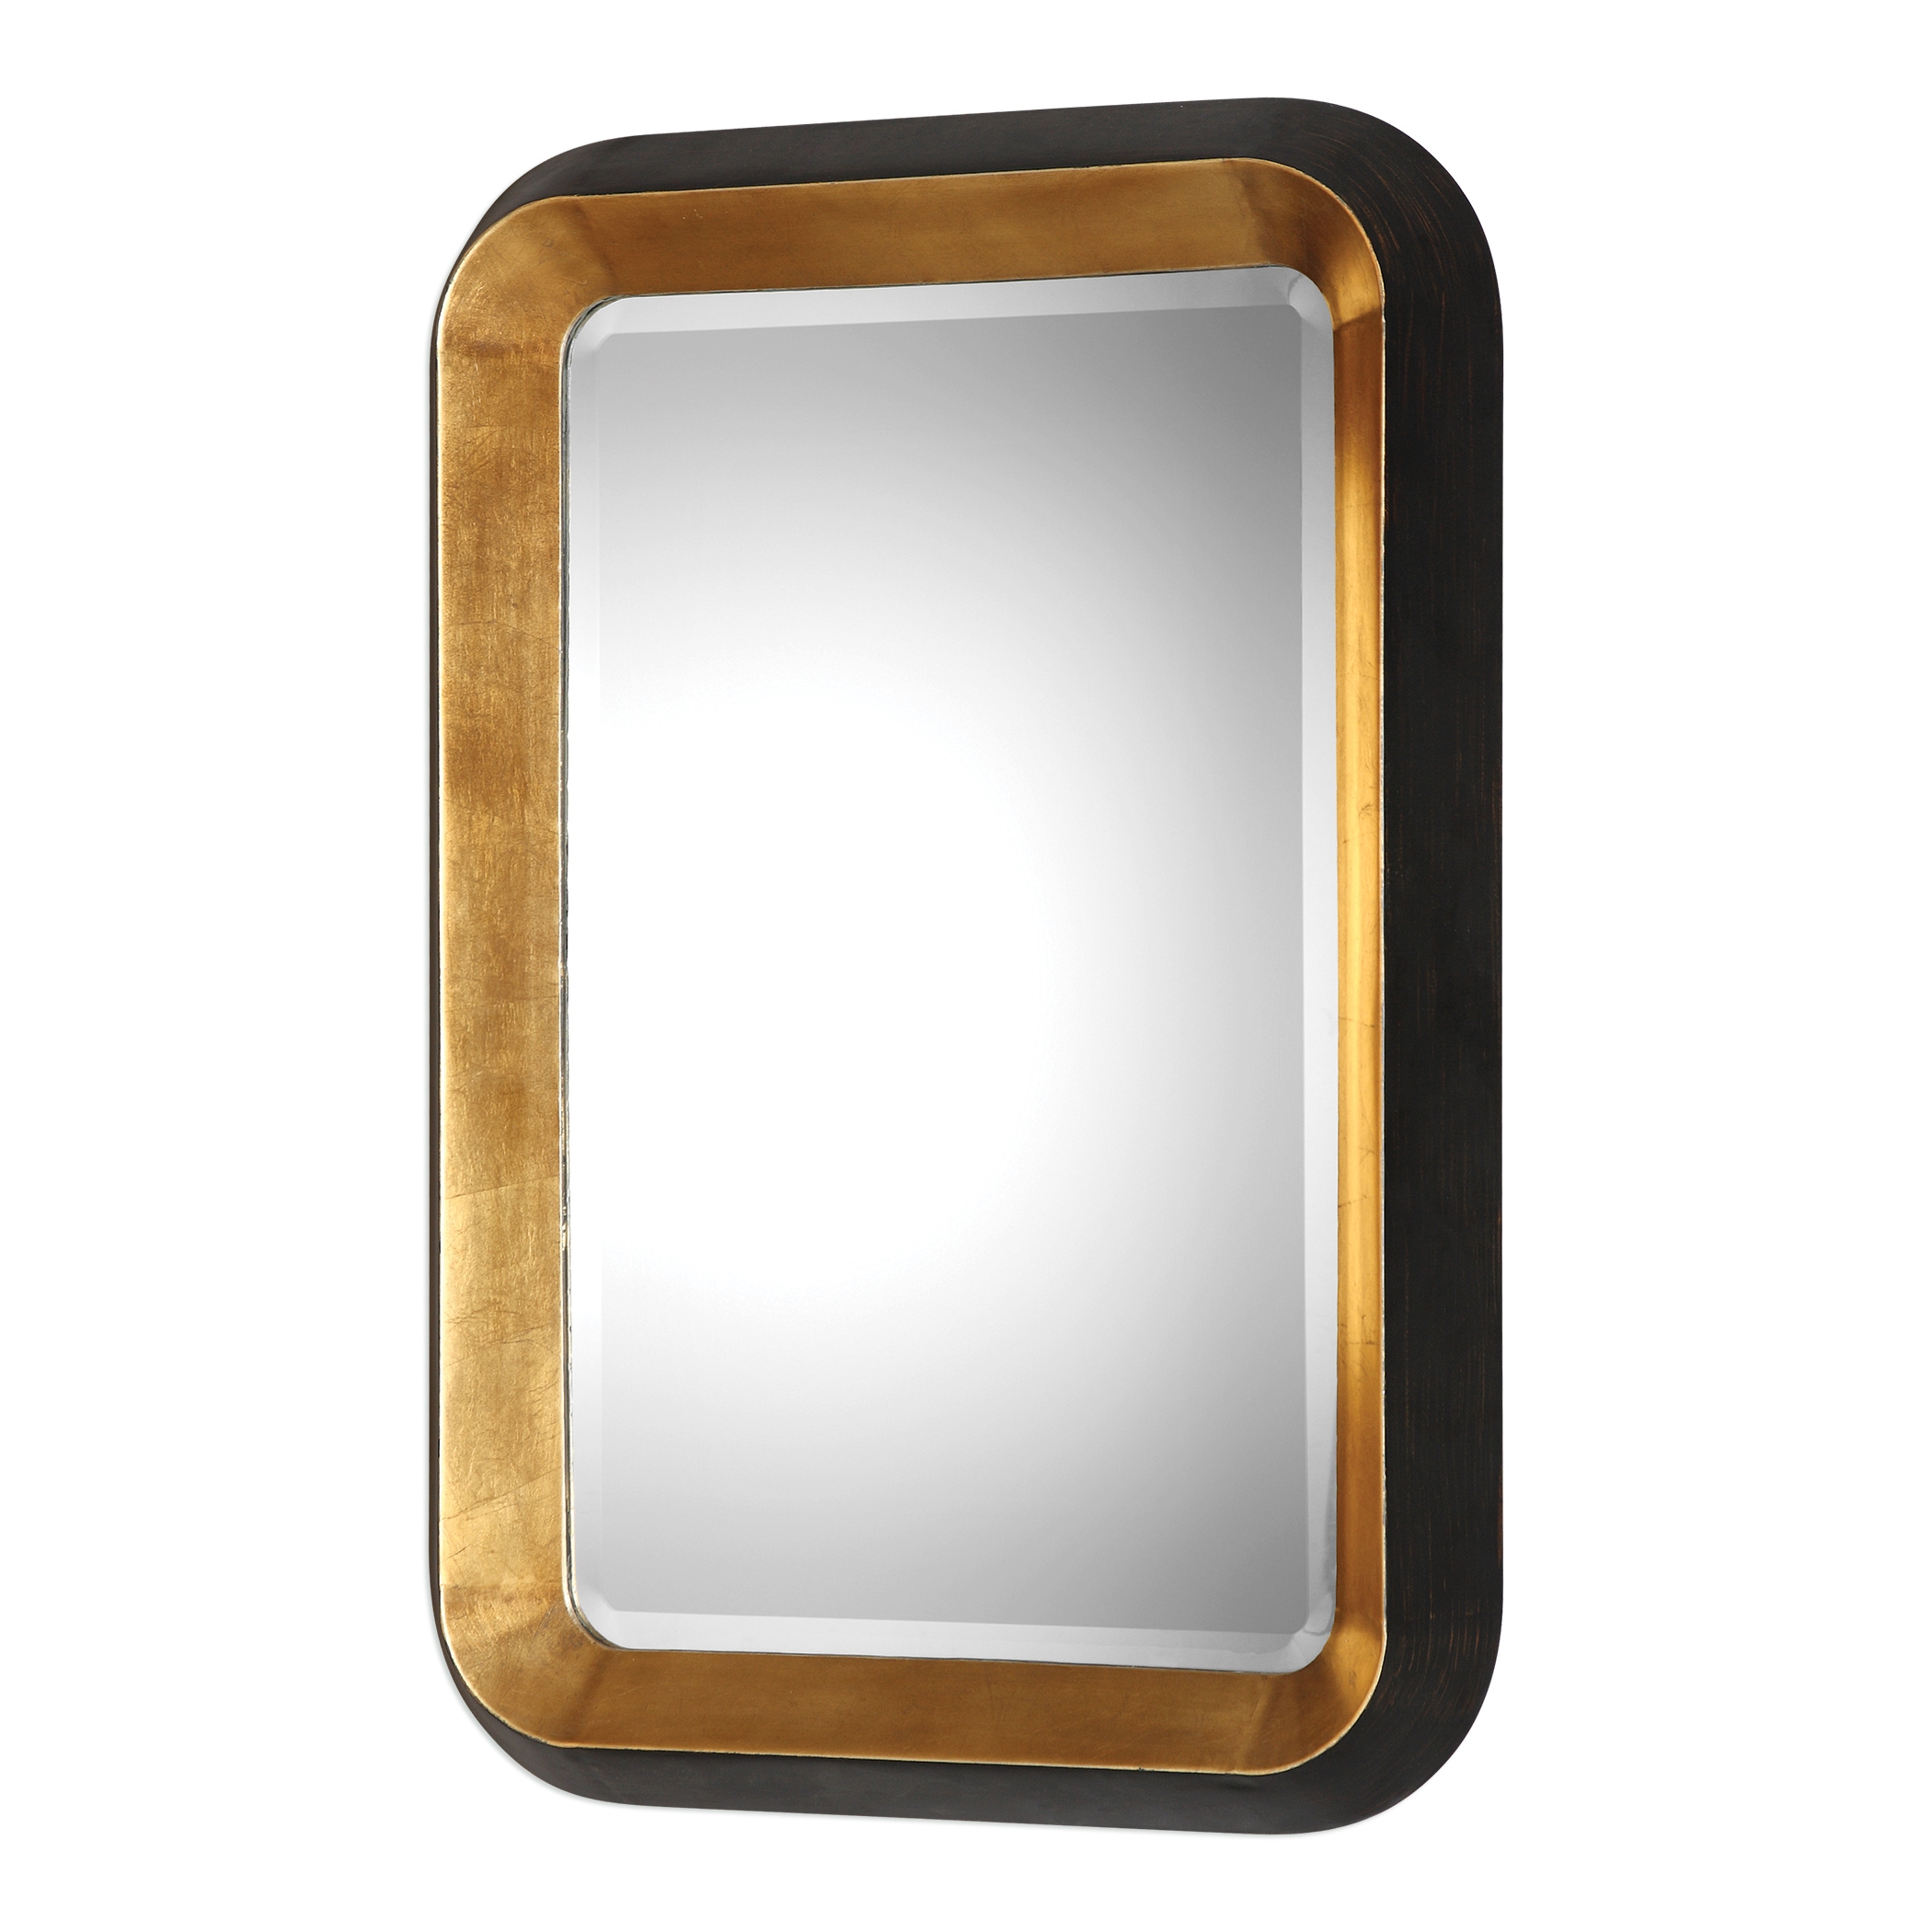 Niva Metallic Gold Wall Mirror - Image 4